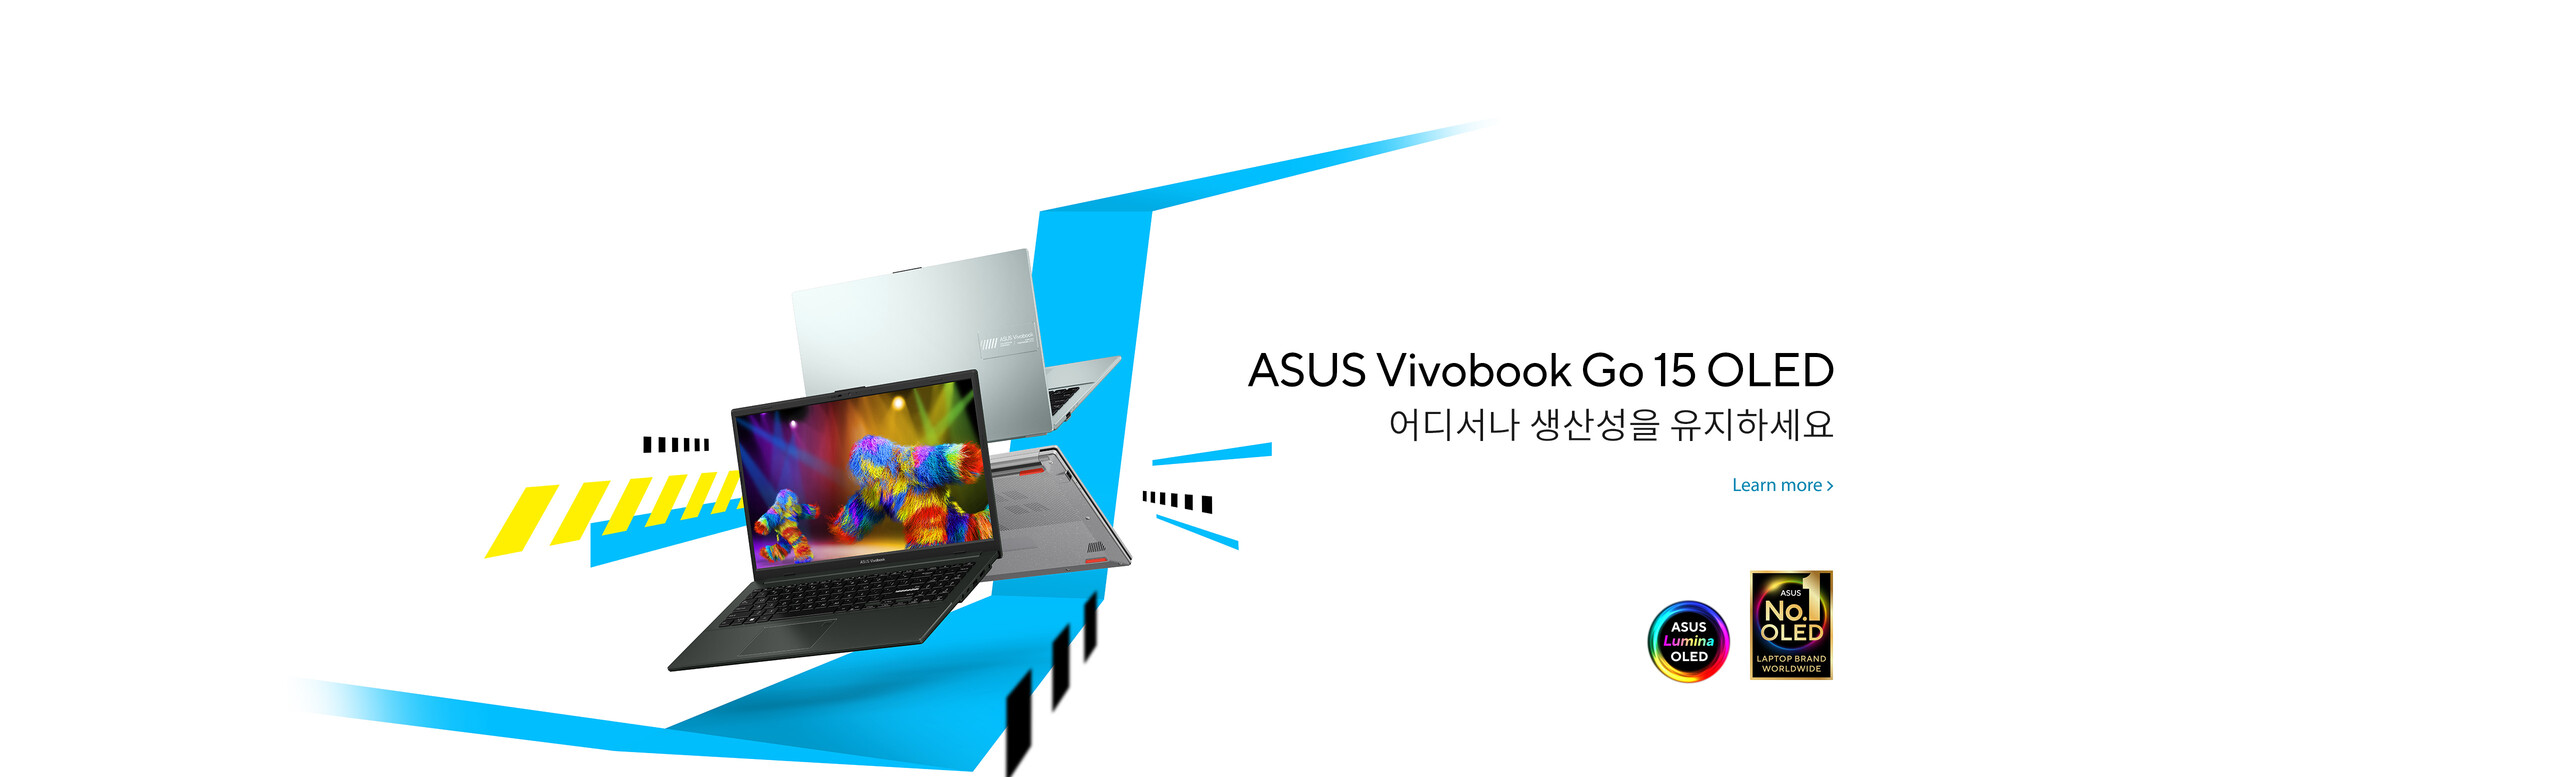 ASUS Vivobook Go 15 OLED (E1504G)